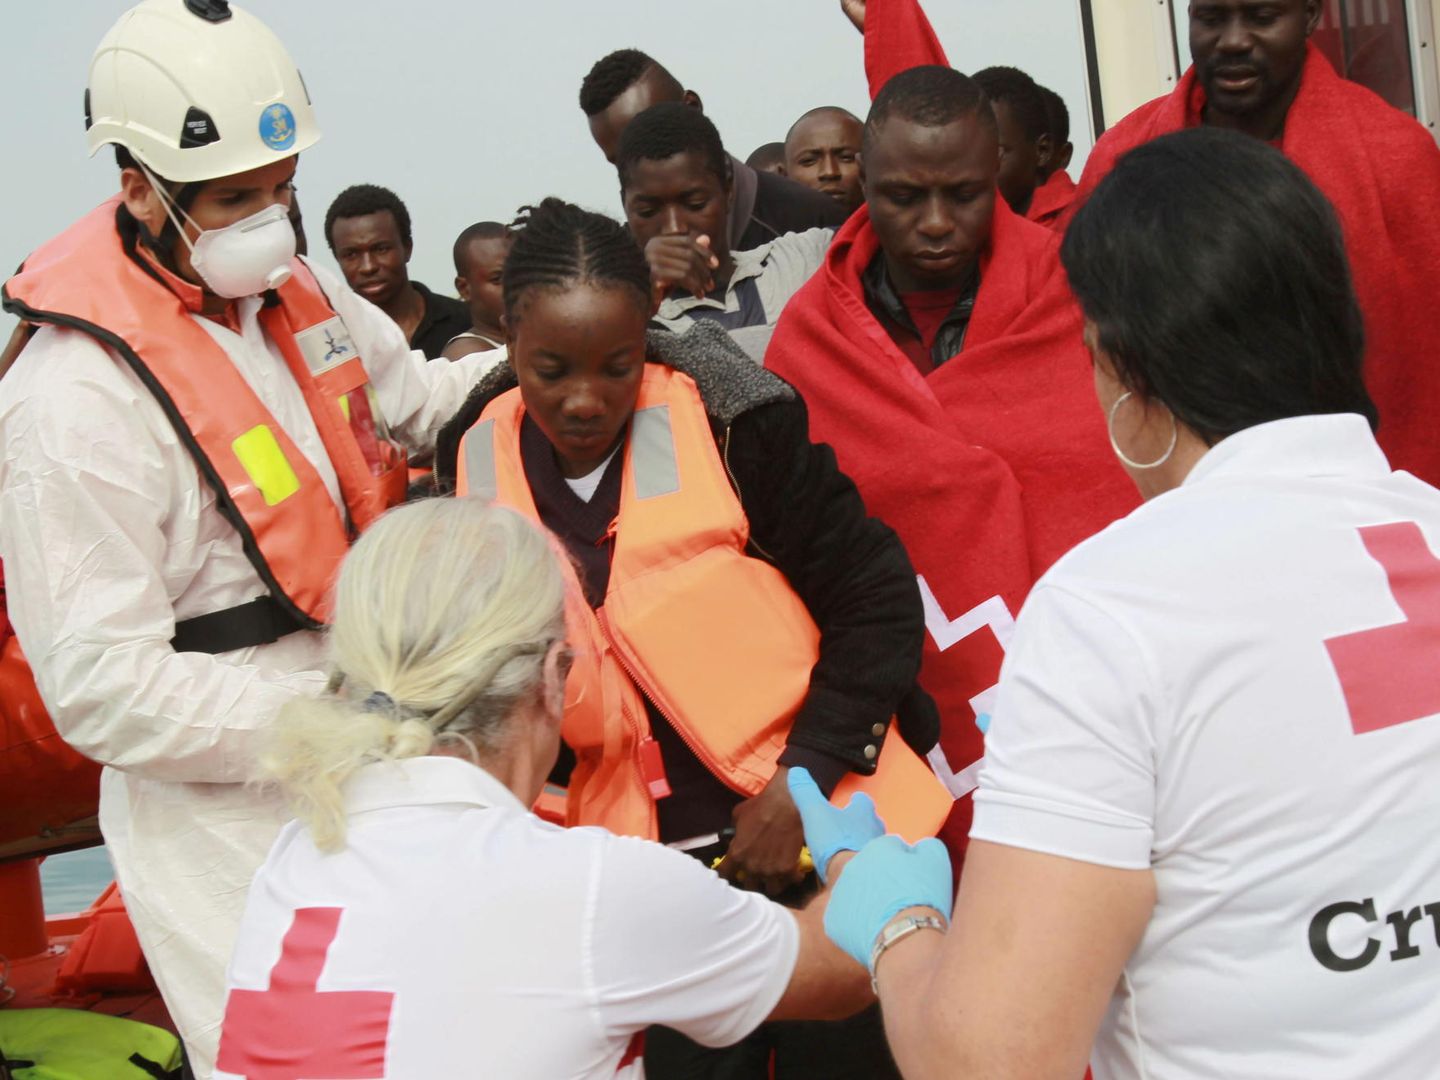 Empleados de Cruz Roja ayudan a desembarcar a inmigrantes subsaharianos. (EFE)